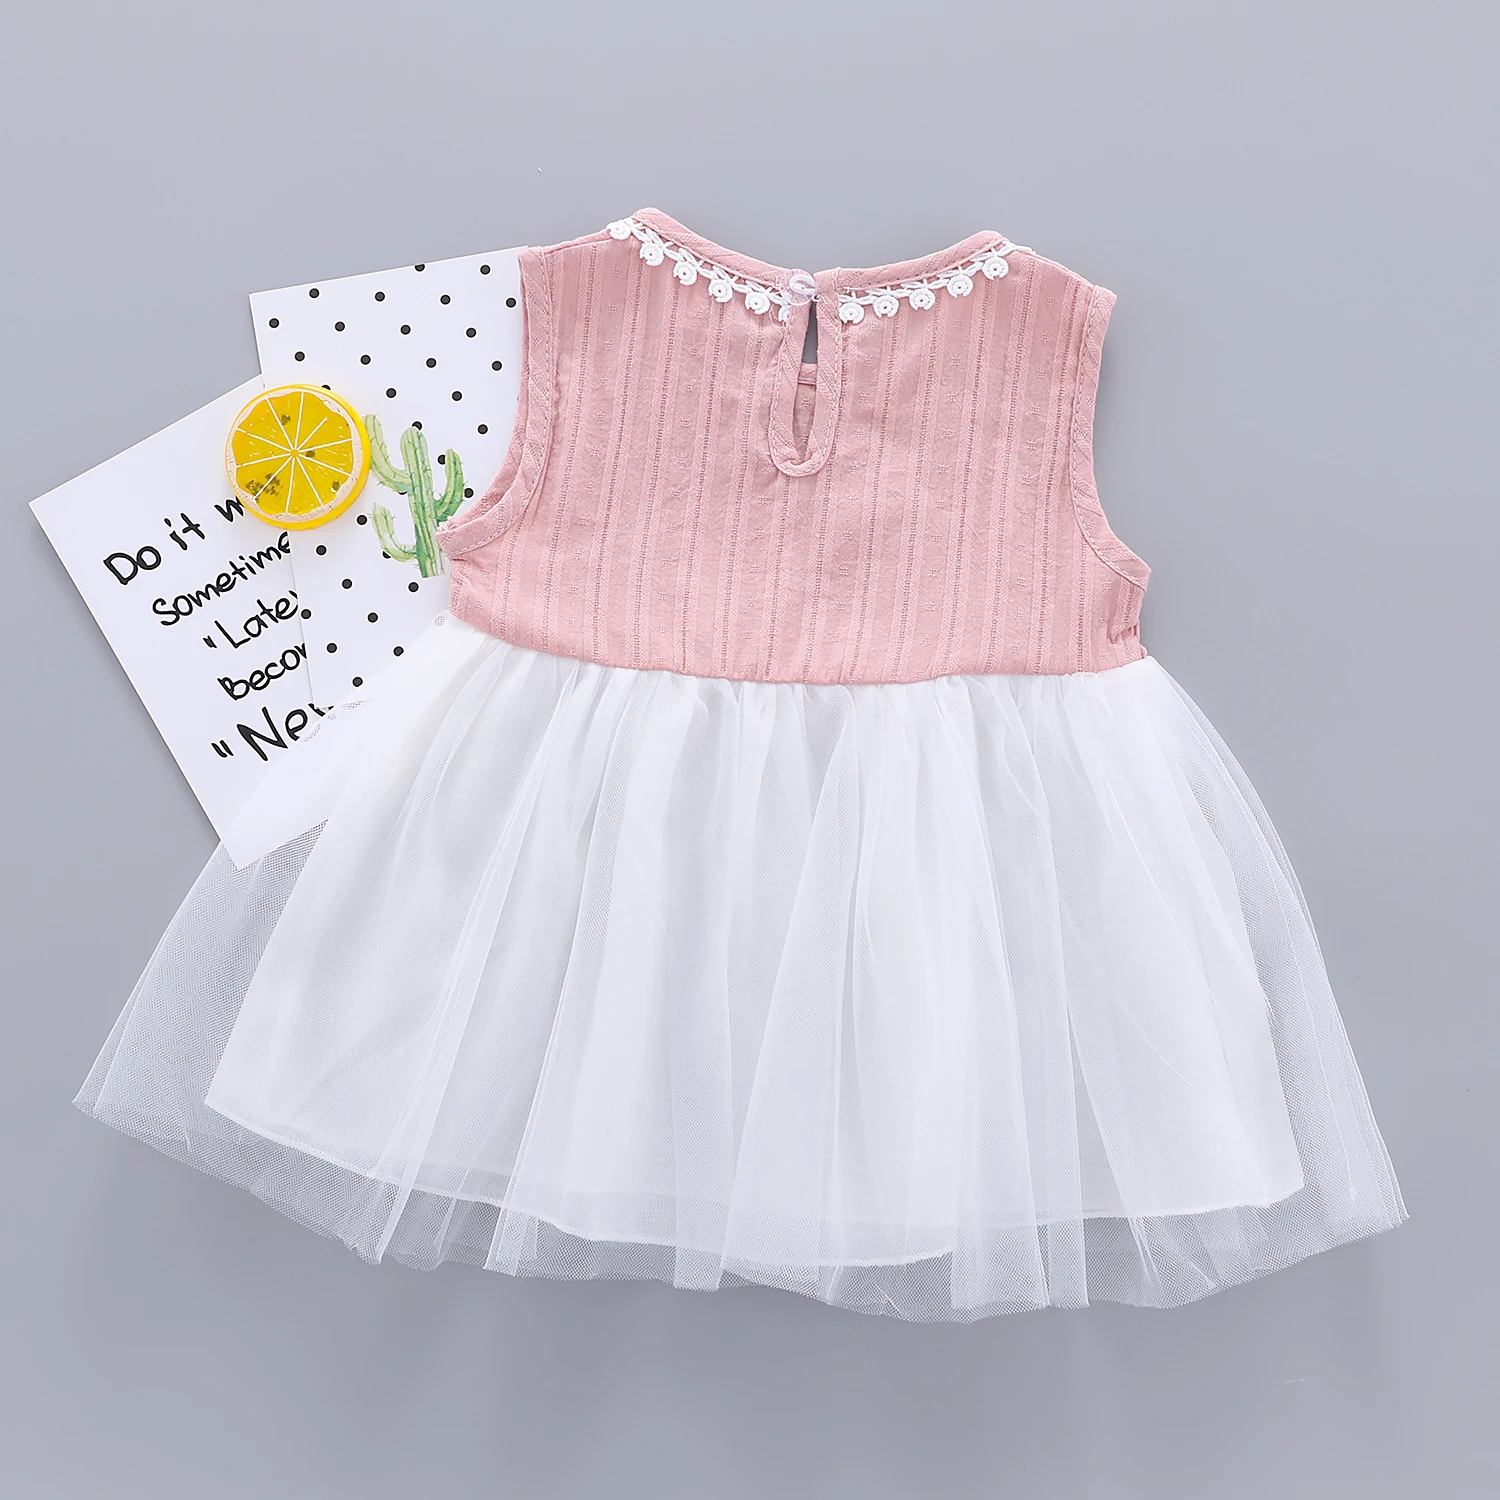 От 0 до 3 лет, новое платье для маленьких девочек, распродажа, белое, розовое кружевное платье-пачка принцессы, платье без рукавов для девочек, одежда для маленьких девочек